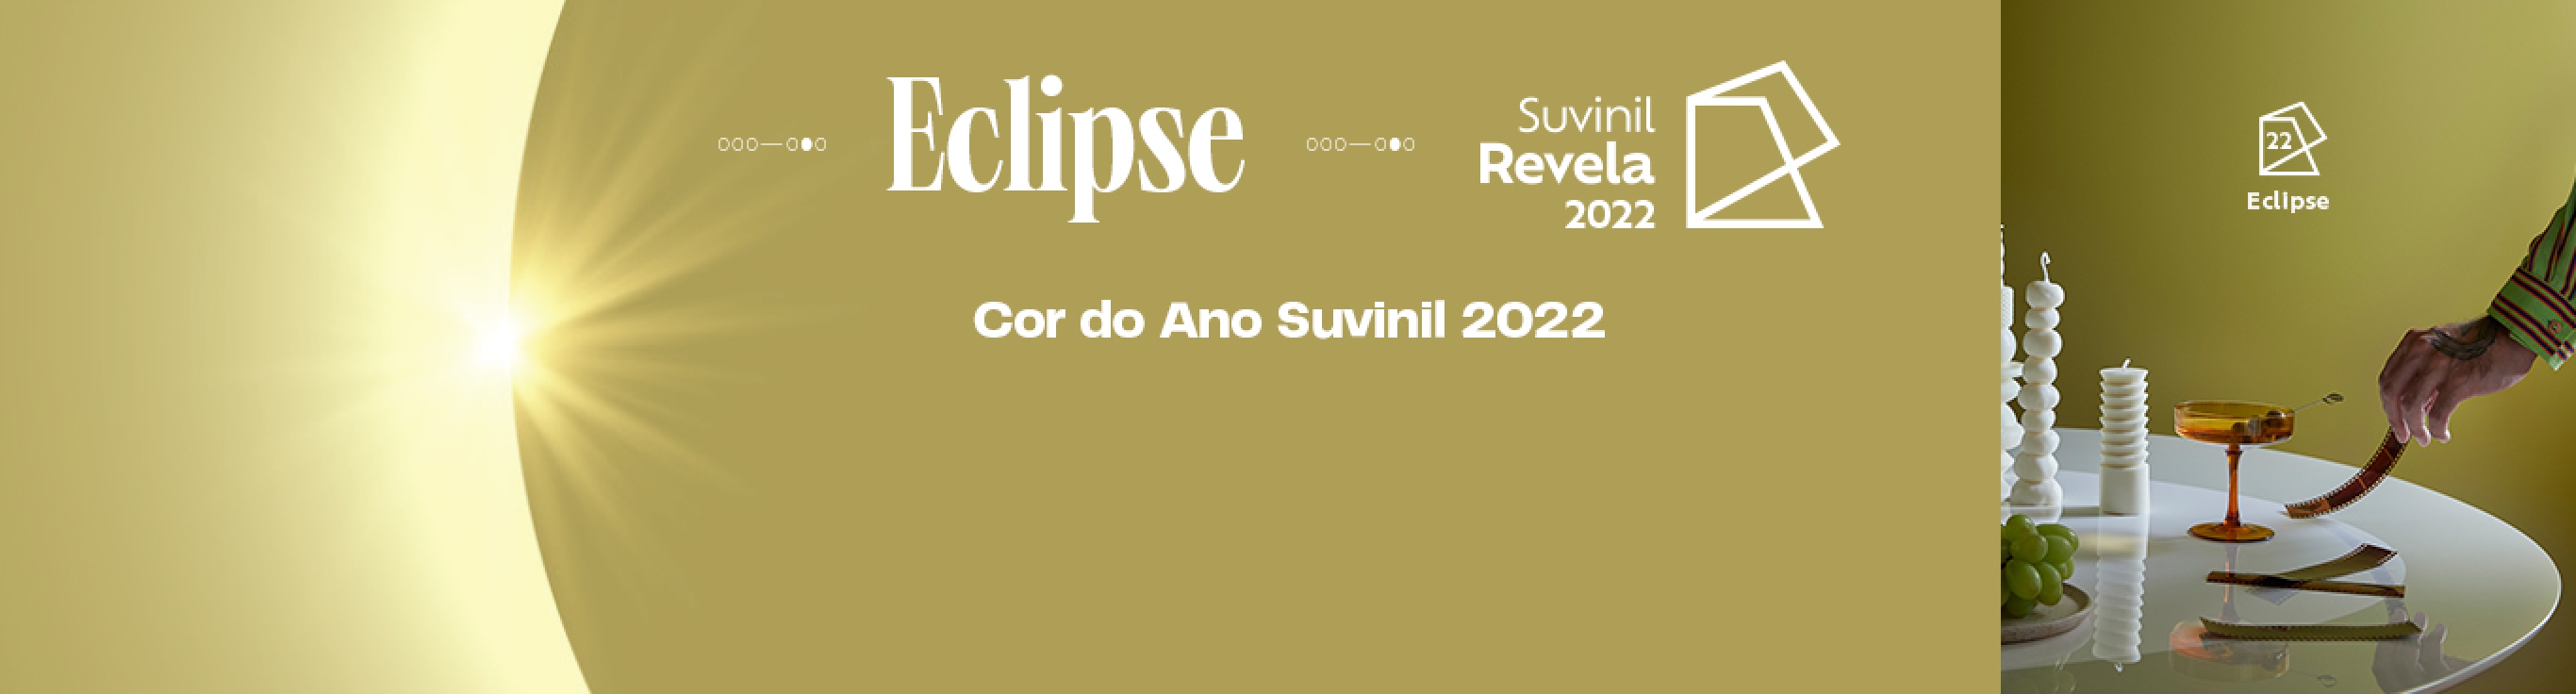 Eclipse a cor do ano Suvinil Releva 2022